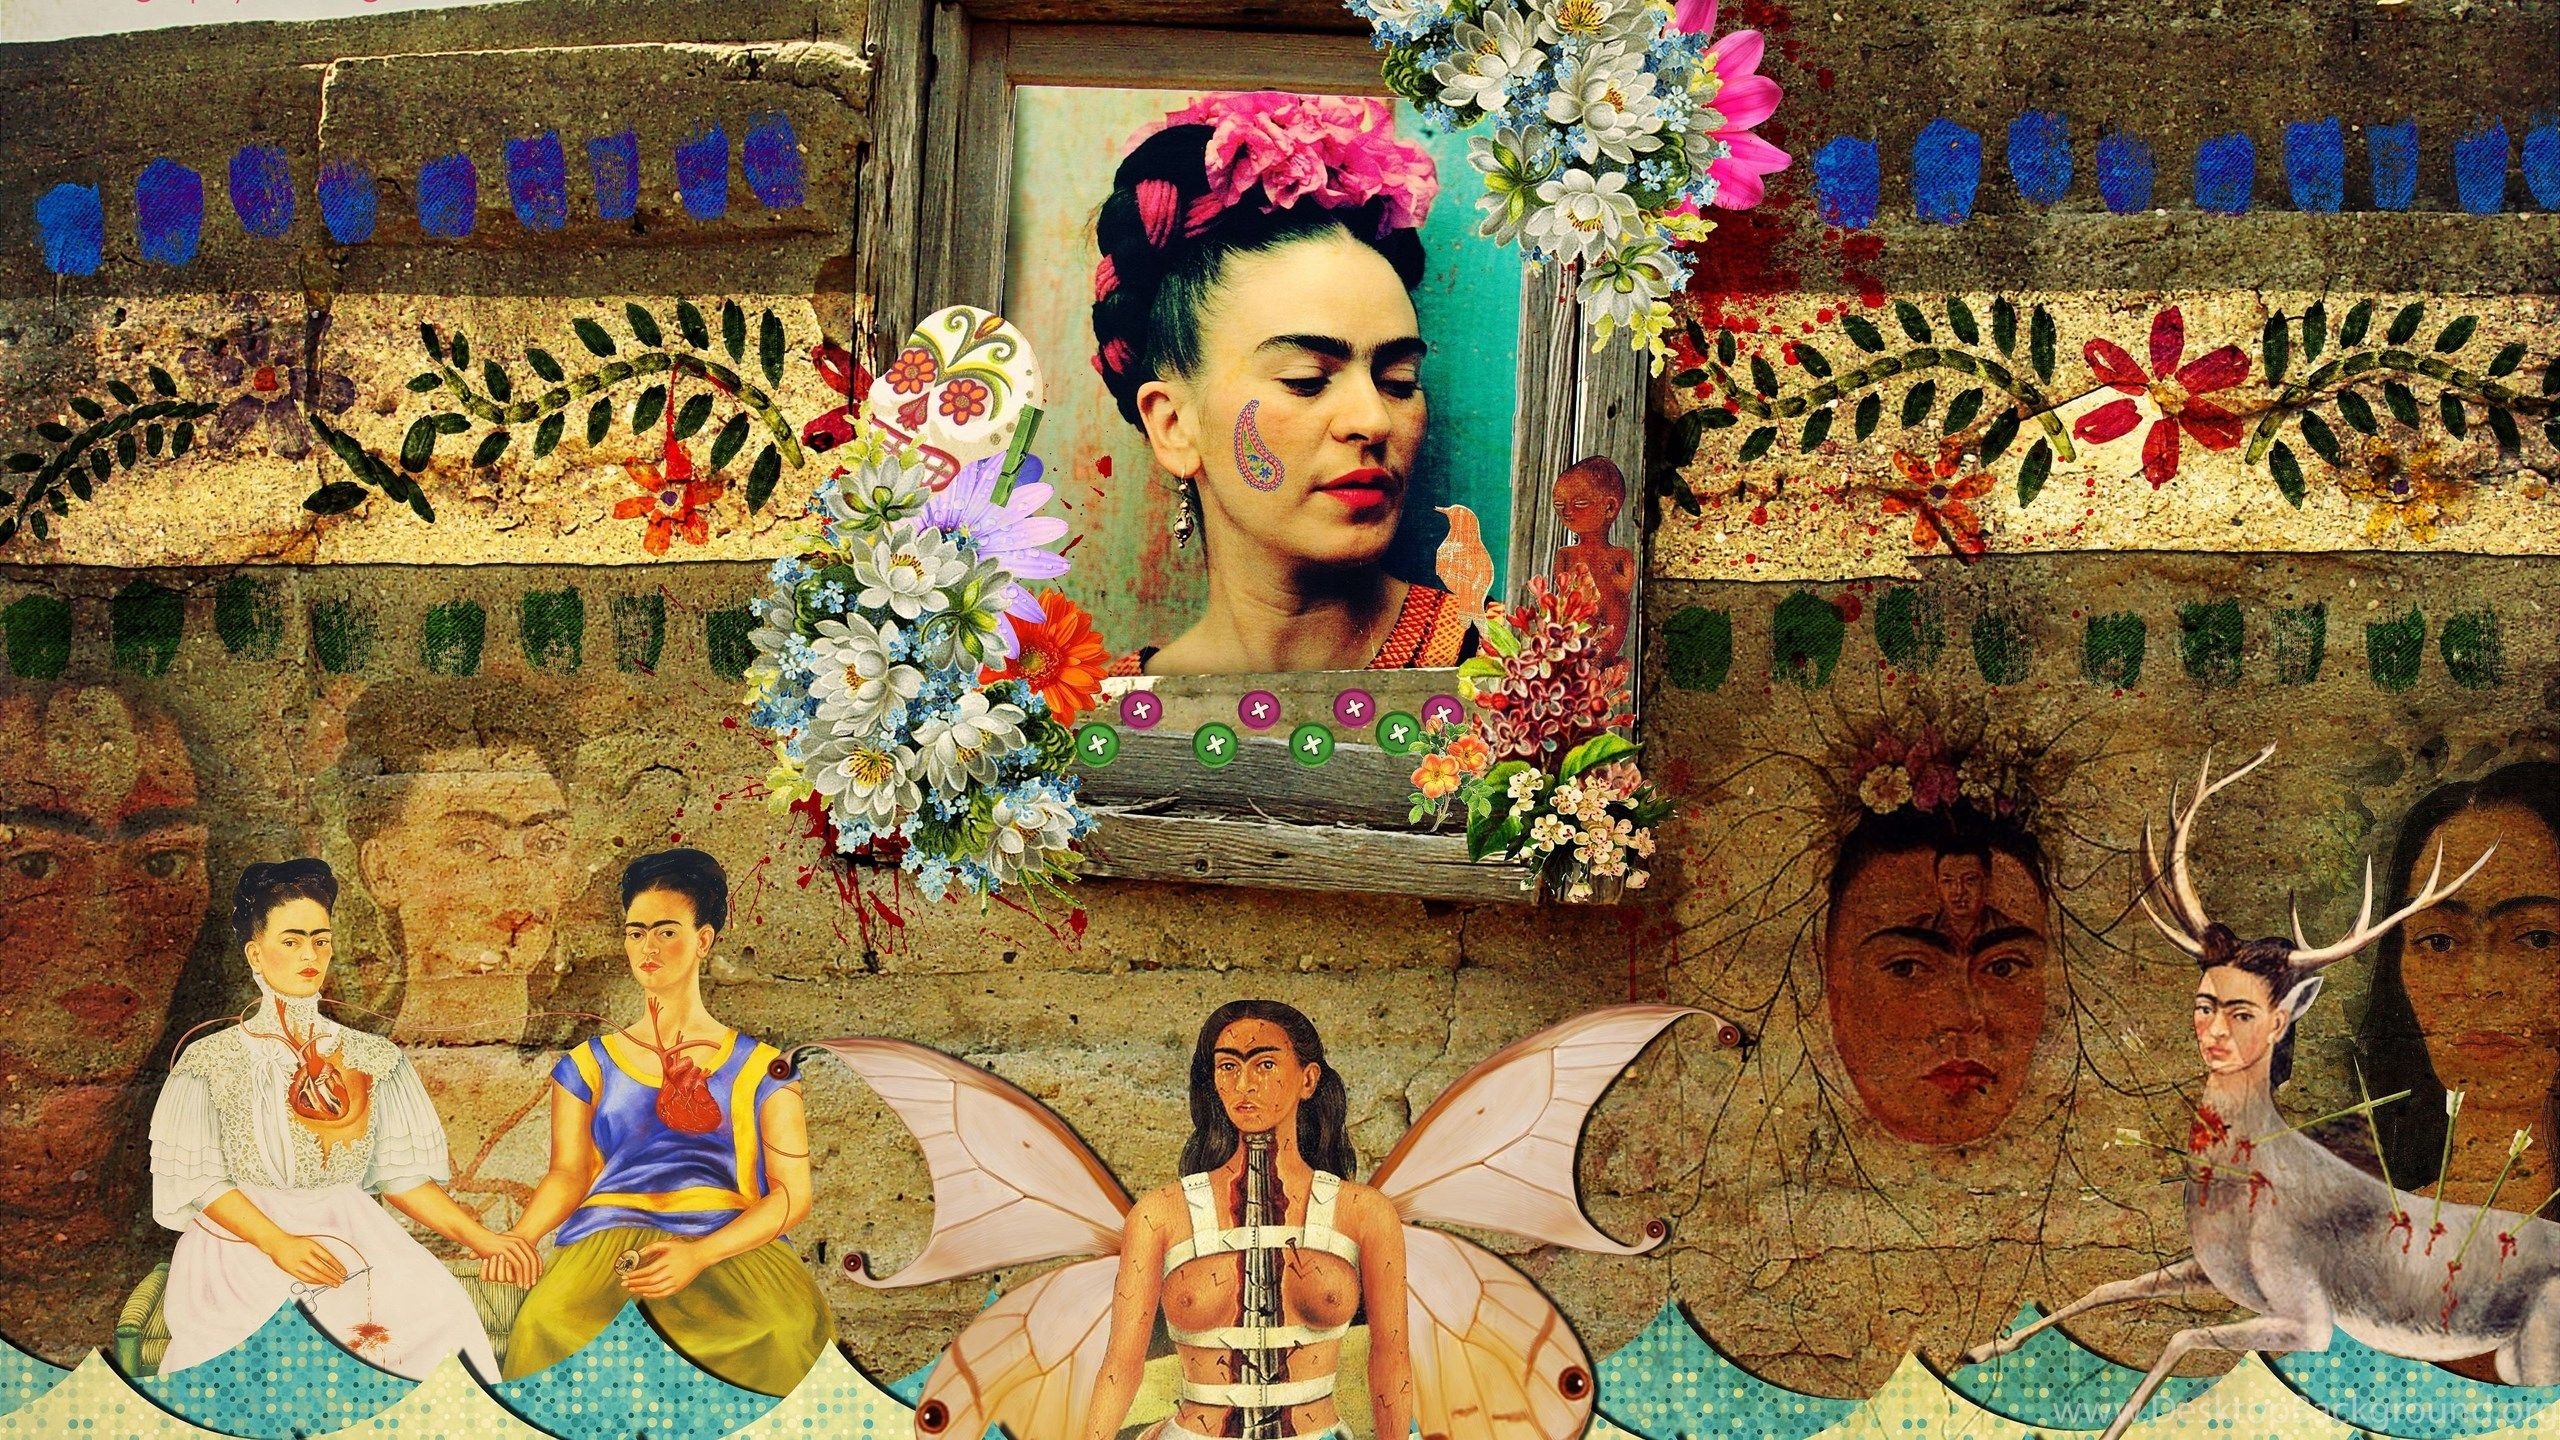 Frida Kahlo, Art wallpapers, Top free backgrounds, Inspirational artist, 2560x1440 HD Desktop